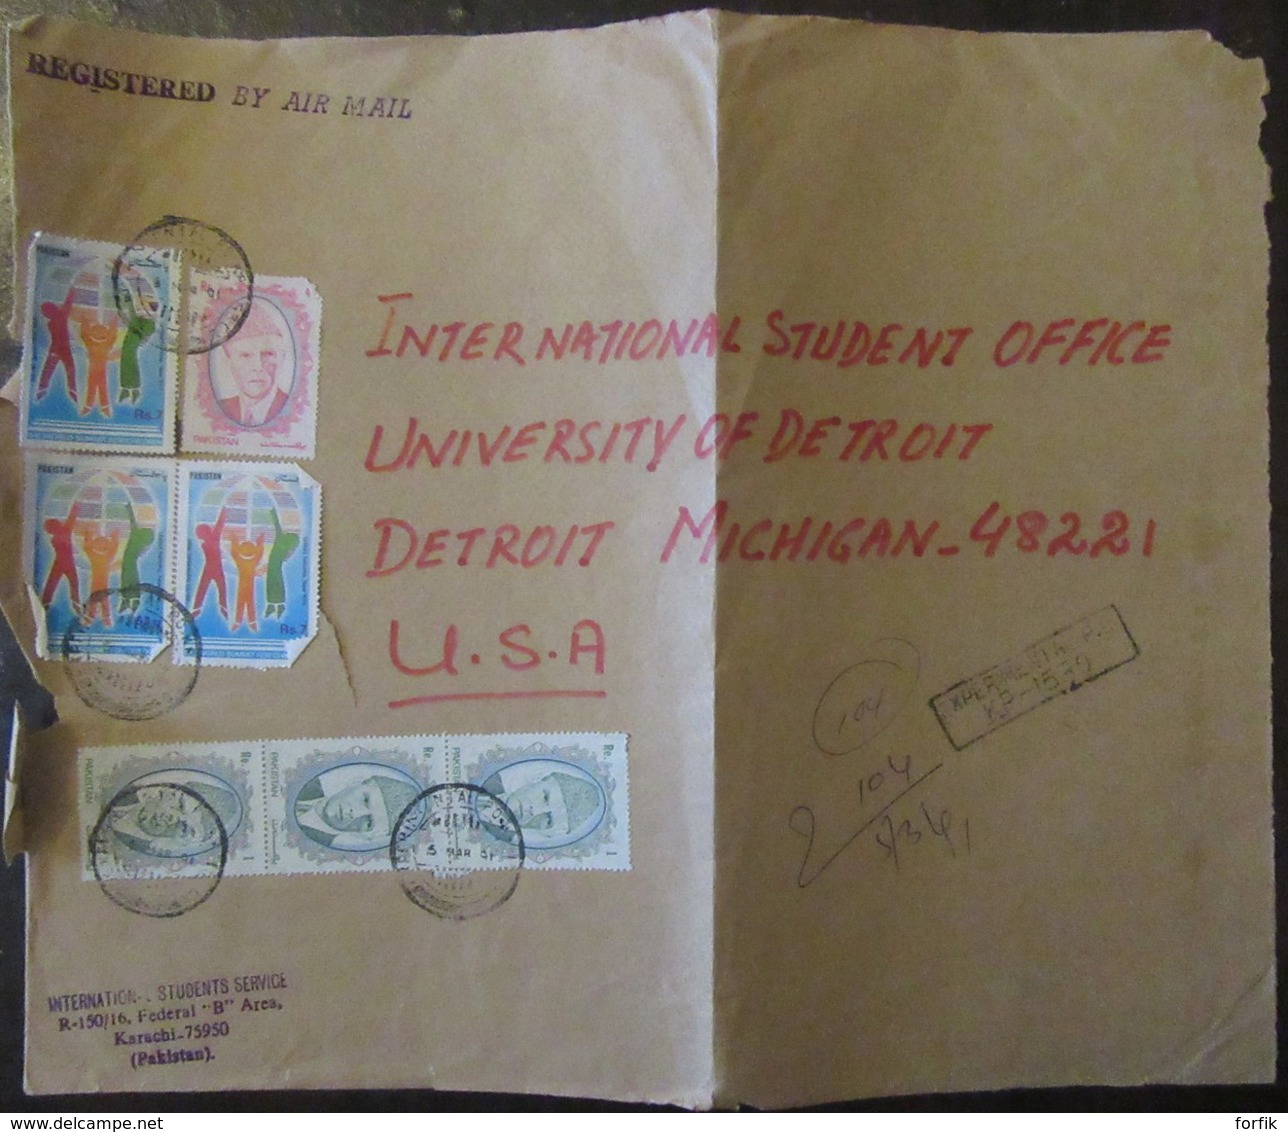 Moyen-Orient (Pakistan, Bengladesh, etc... - Lot de 43 enveloppes timbrées vers étranger ou non, à étudier